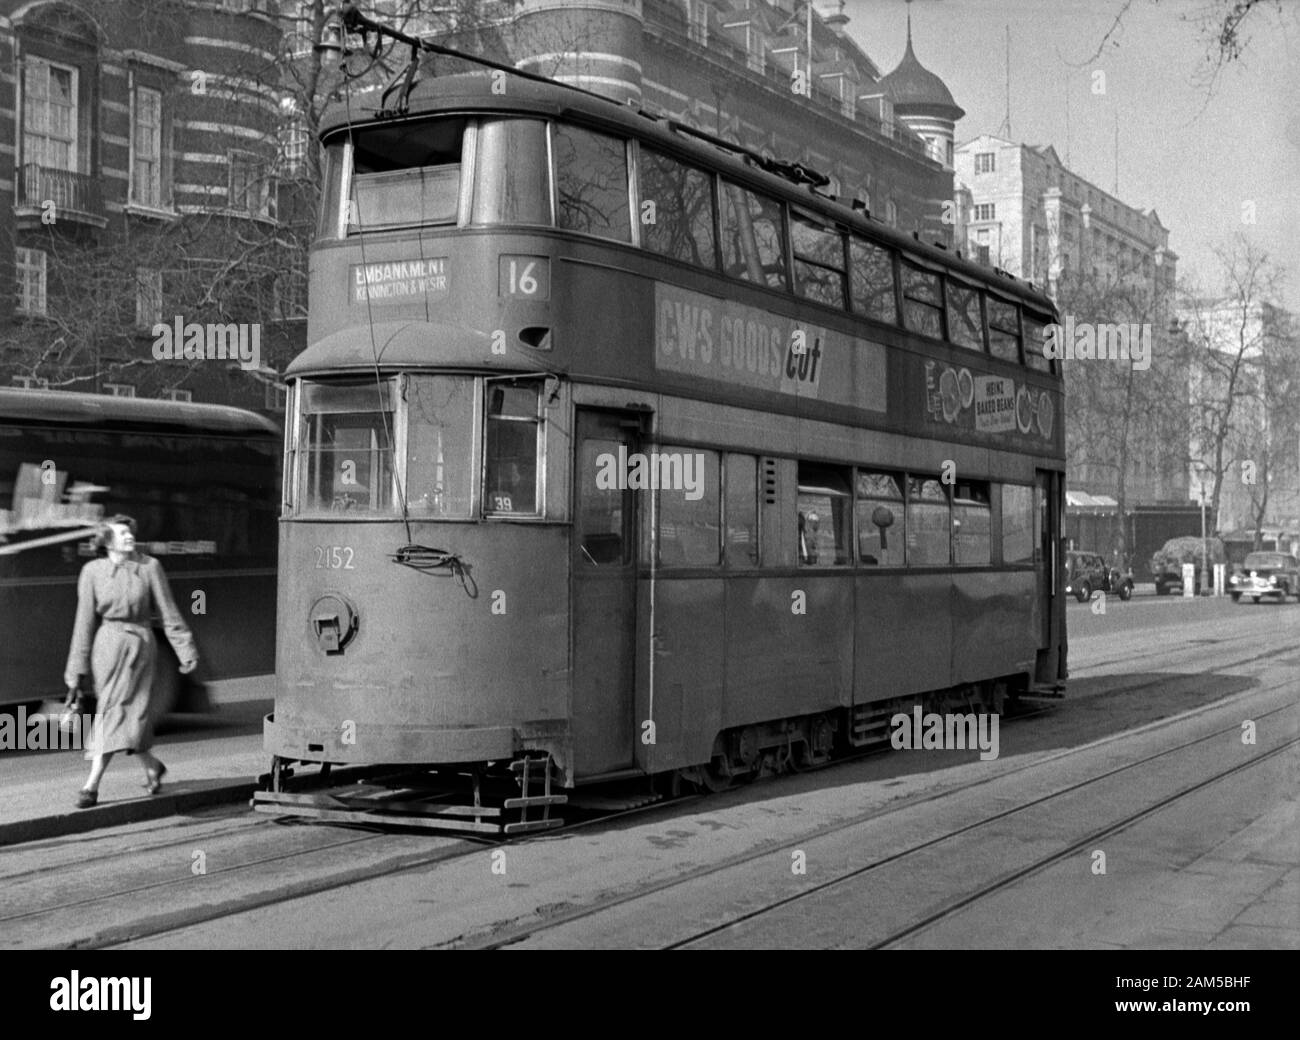 London Tram n. 2152 0n Route 16 per il terrapieno. Risalente alla fine del 1940/inizio anni cinquanta Foto Stock